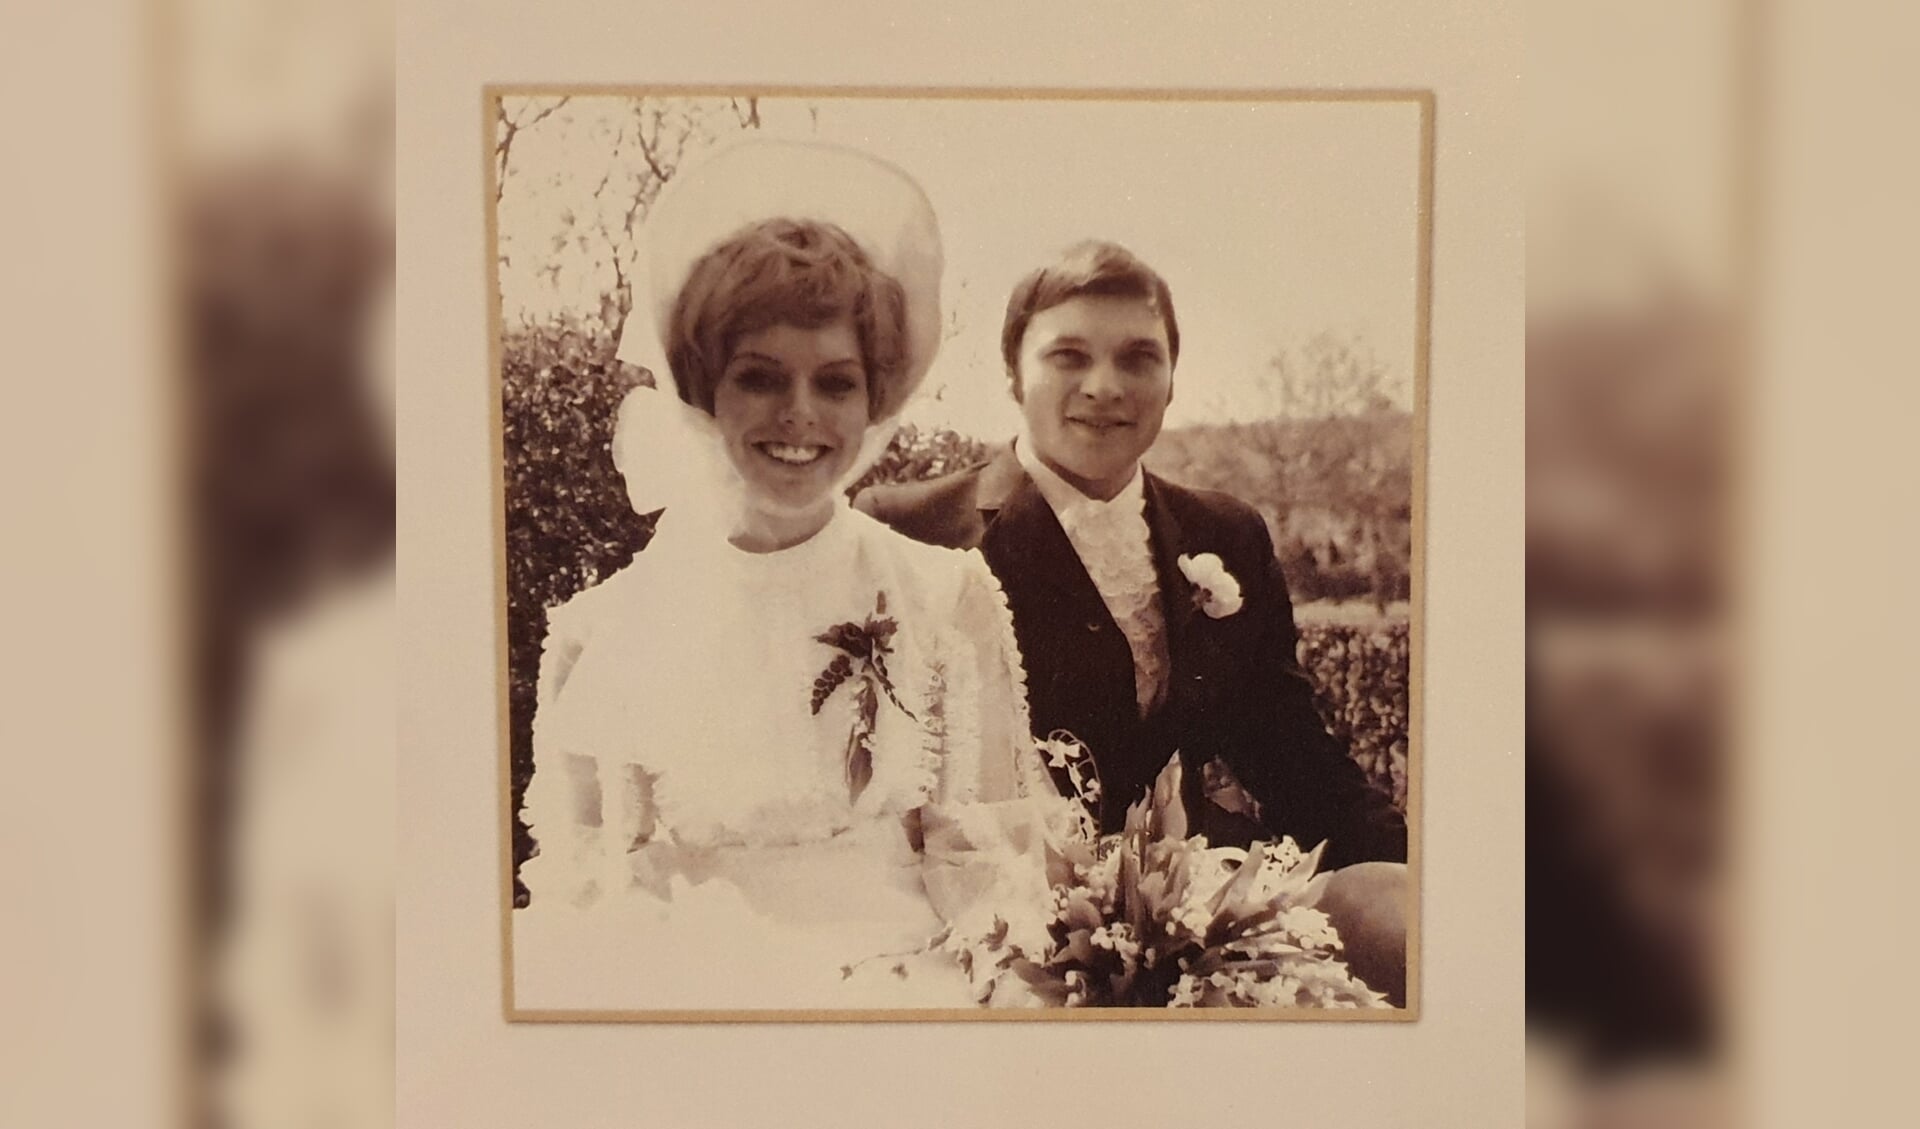 Het kerkelijke huwelijk was op 5 mei 1970, de 'echte' trouwdag volgens het paar. | Foto: met dank aan Jantine Kleermans